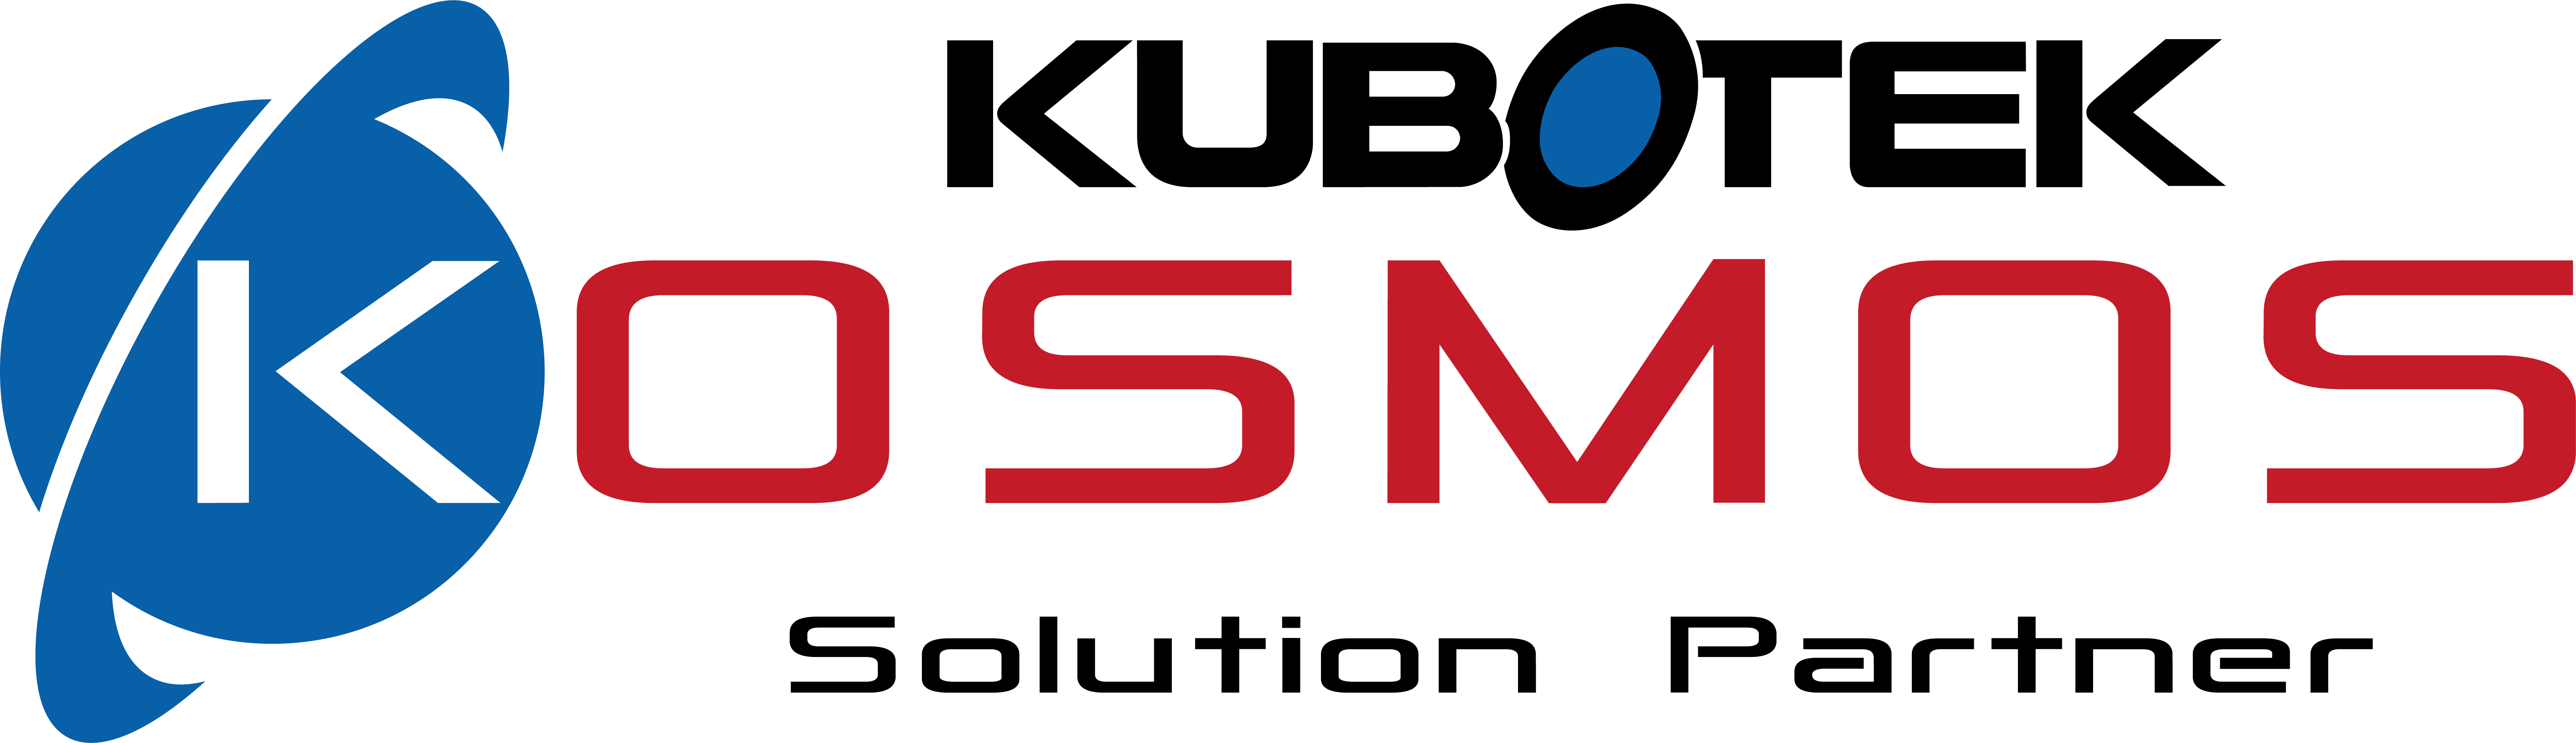 Kubotek Kosmos logo partner color